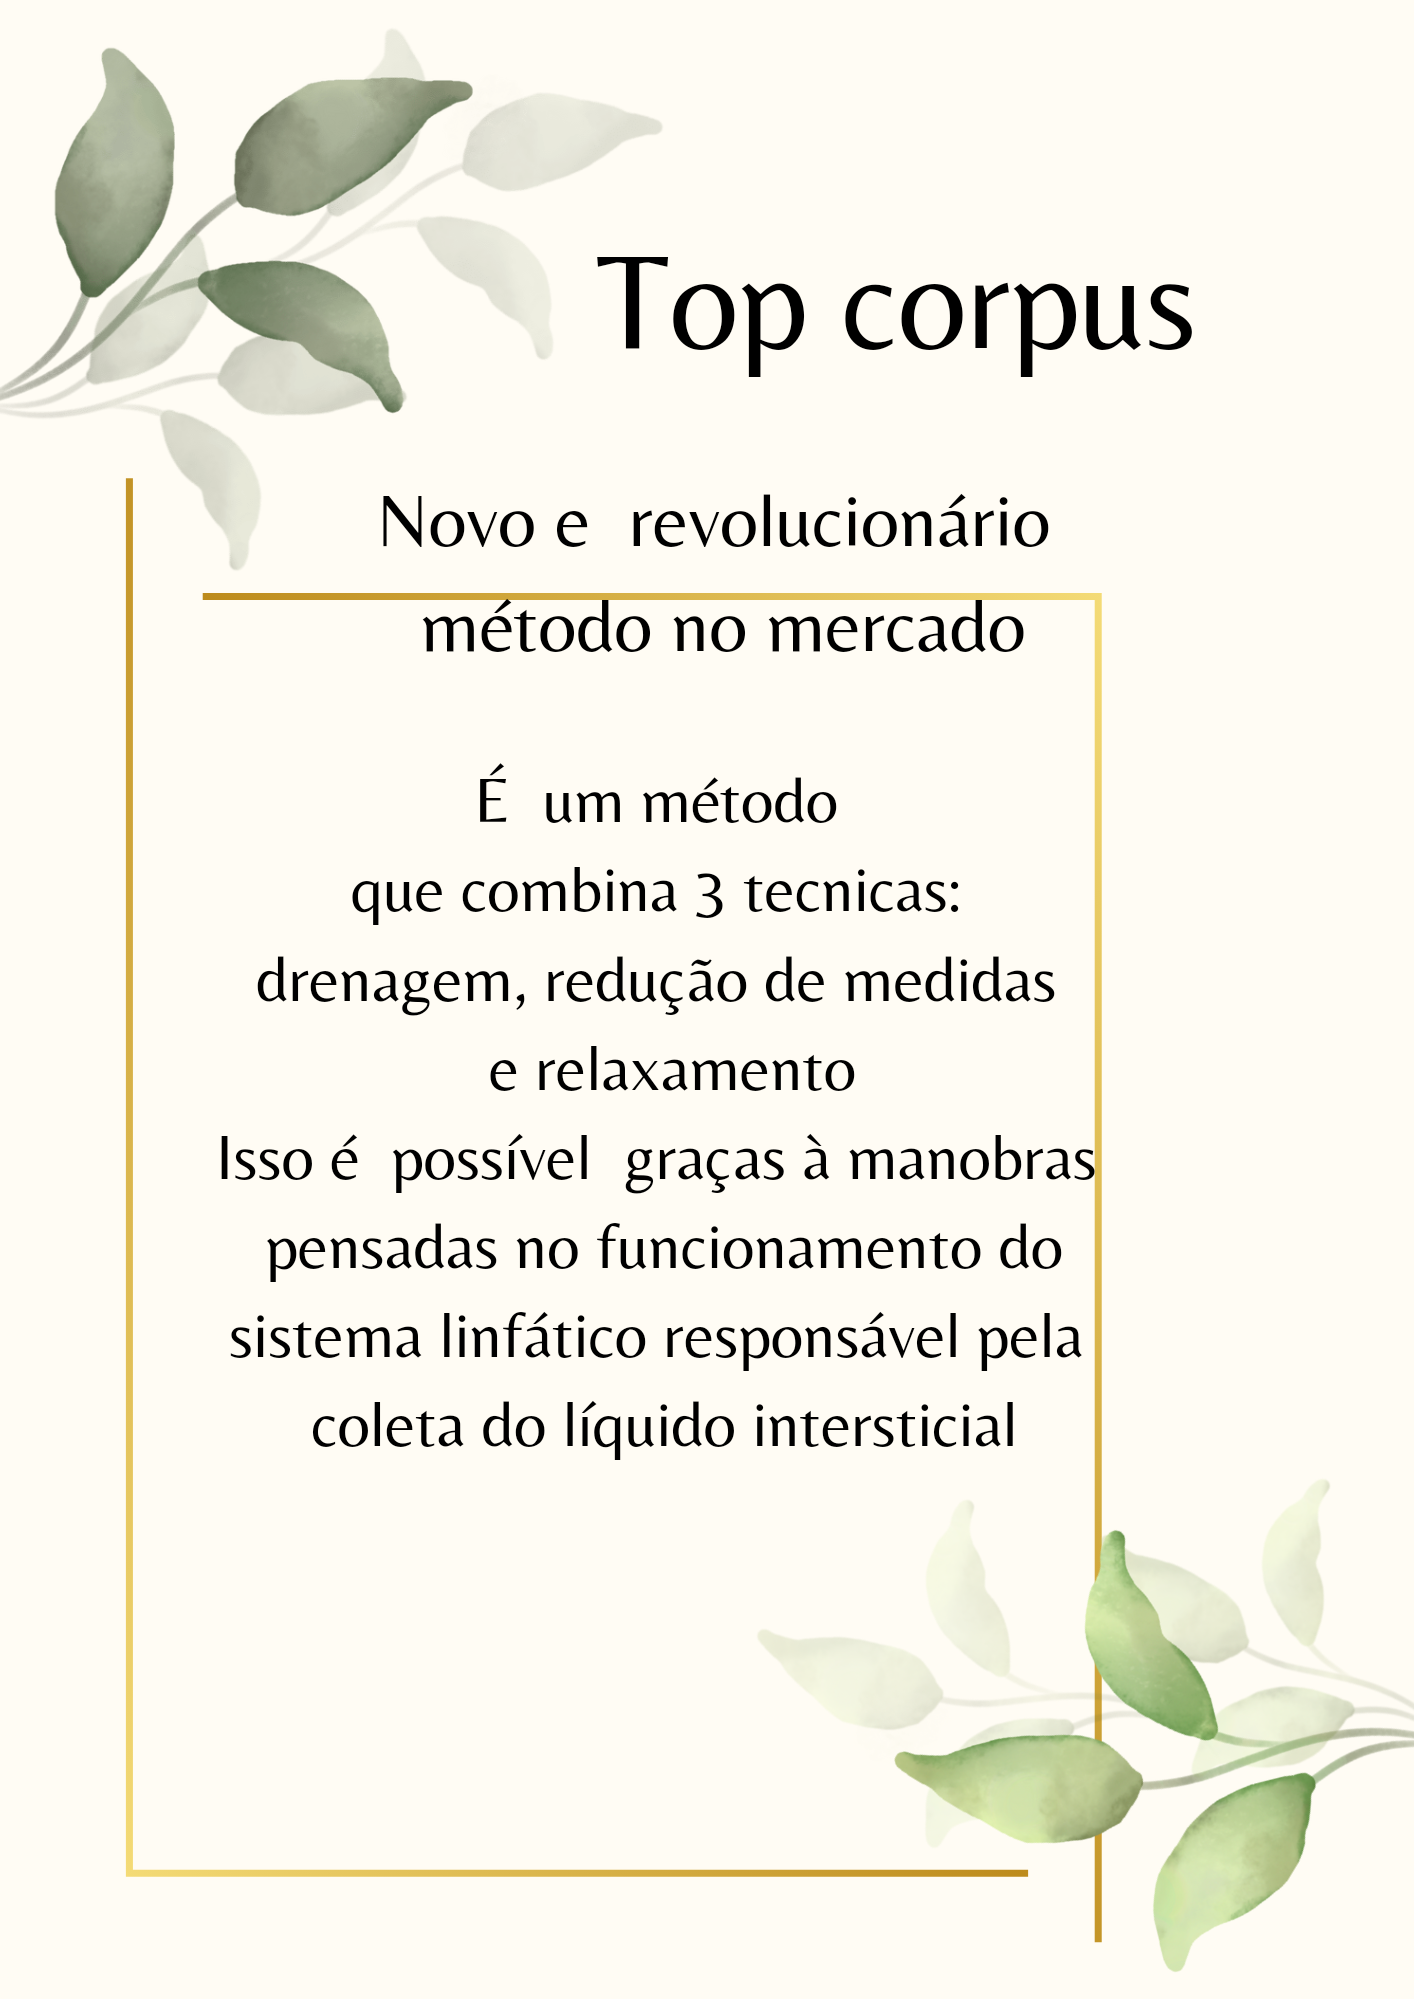 Top Corpus